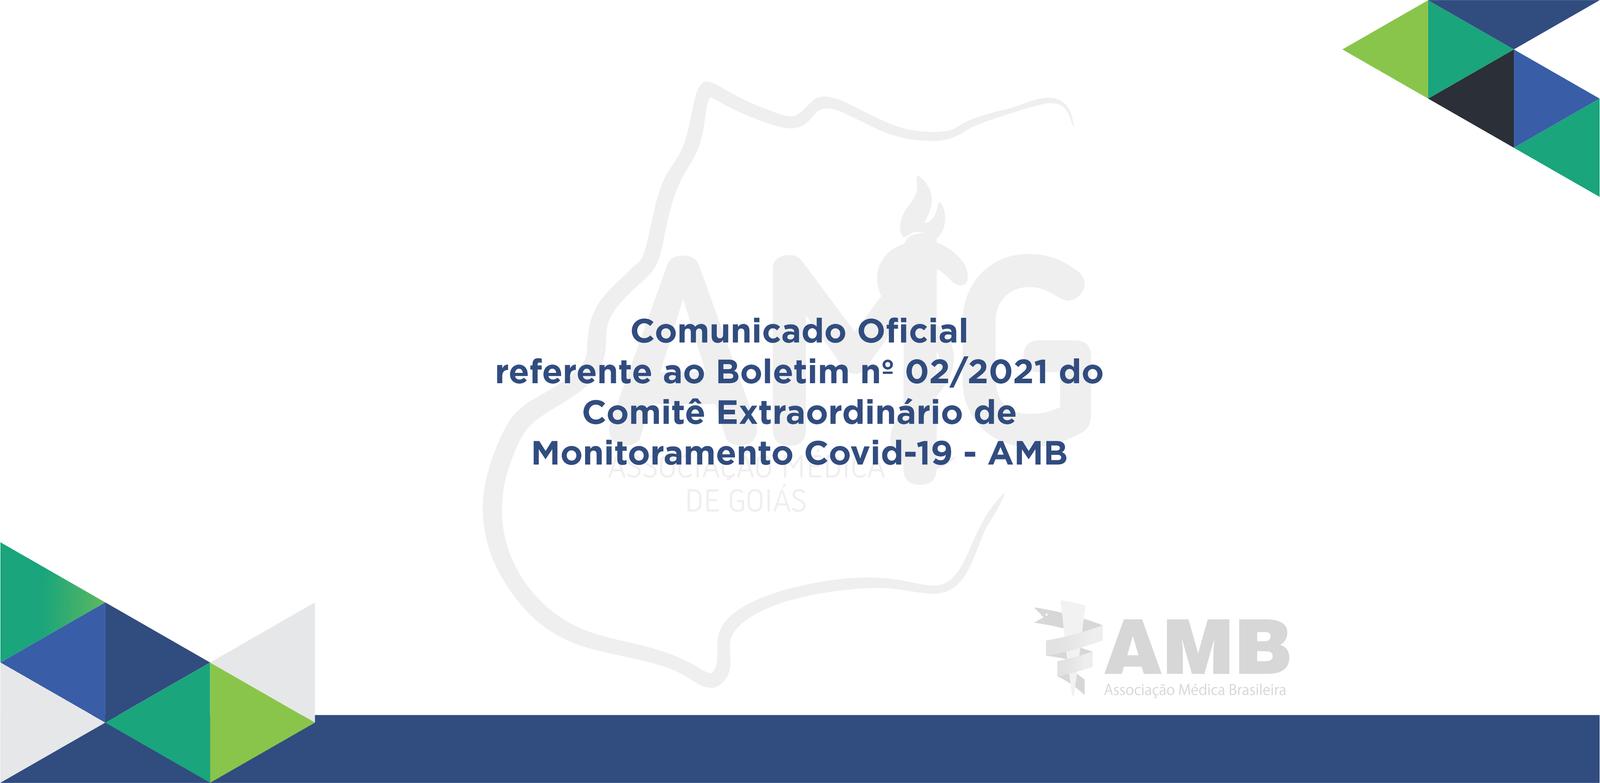 AMG | Associação Médica de Goiás_Comunicado Oficial referente ao Boletim nº 02/2021 do Comitê Extraordinário de Monitoramento Covid-19 - AMB